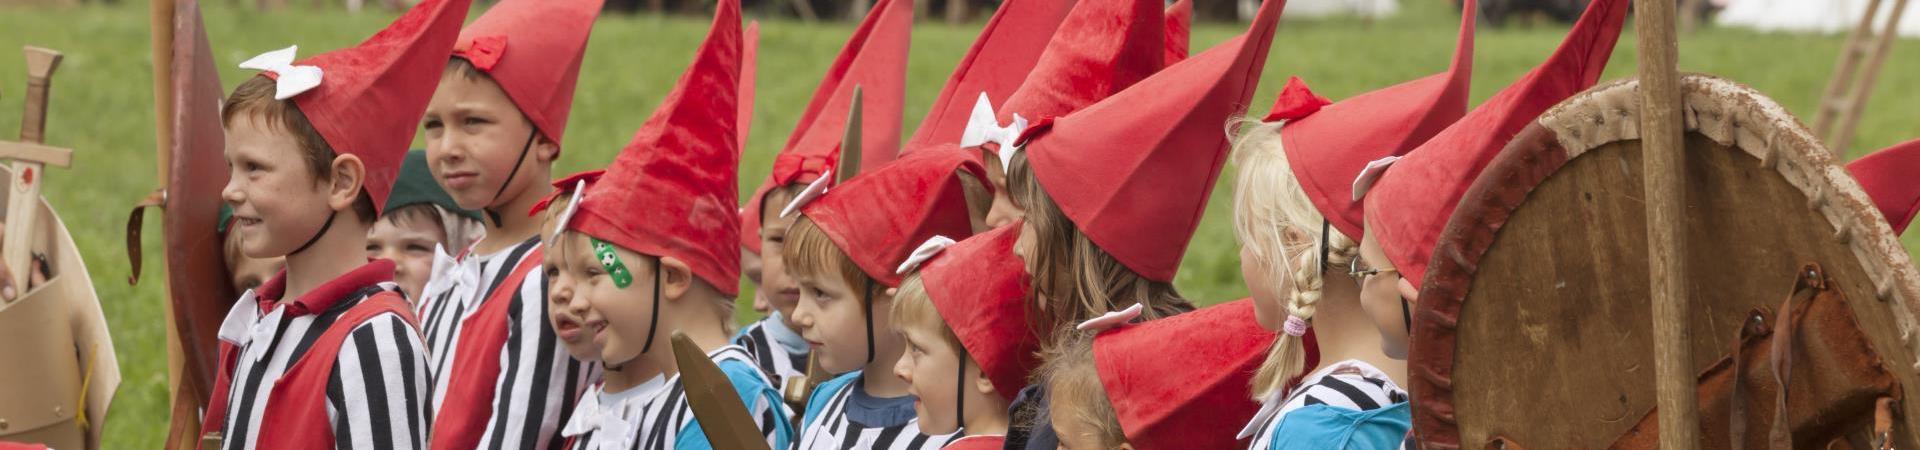 Children dressed-up as dwarves